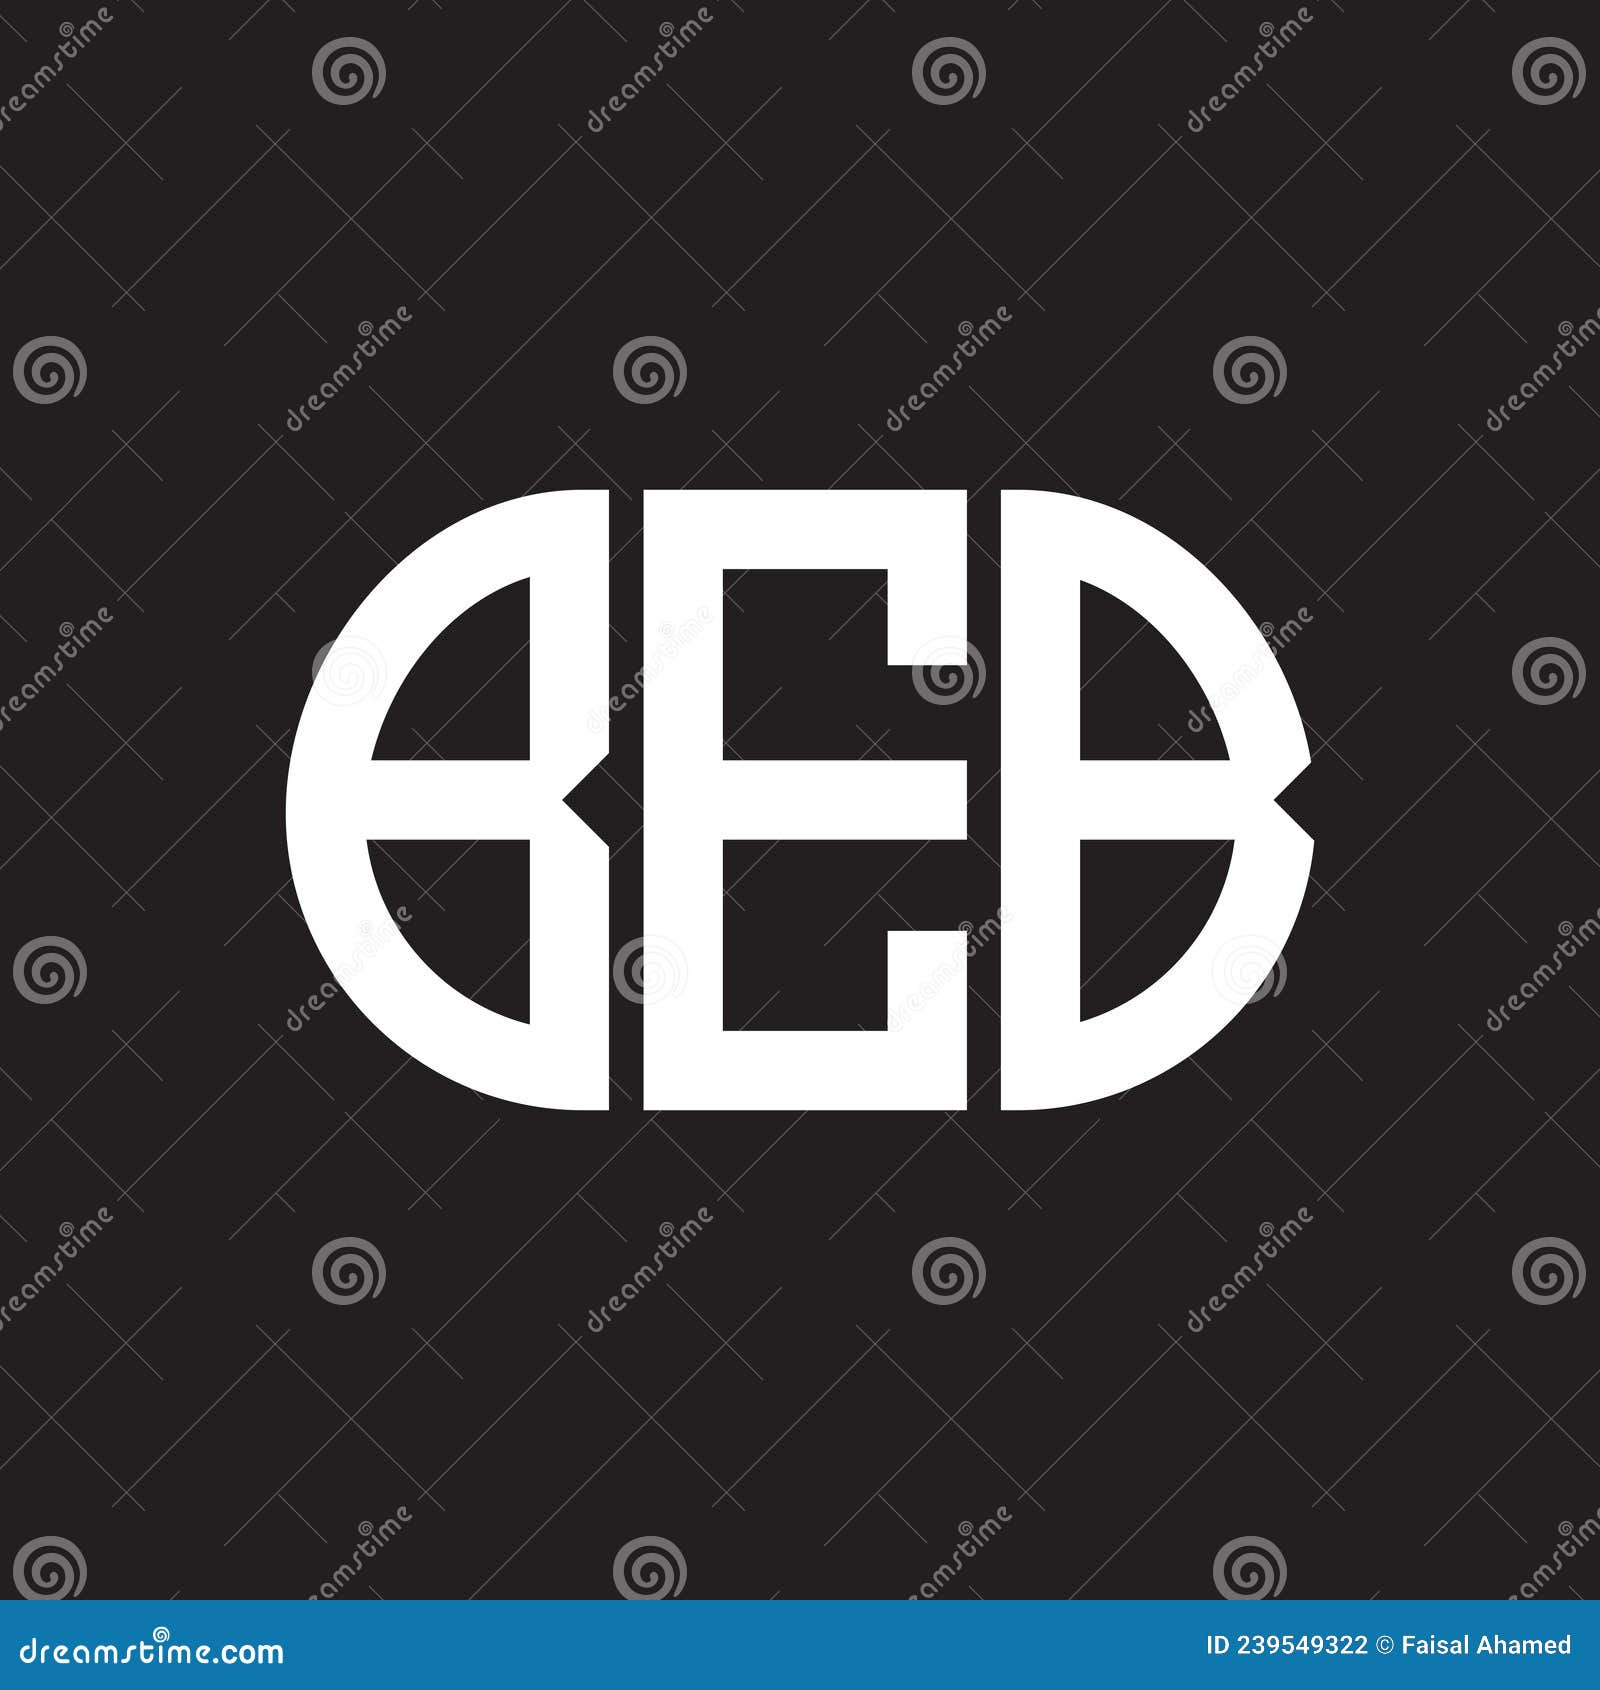 beb letter logo  on black background. beb